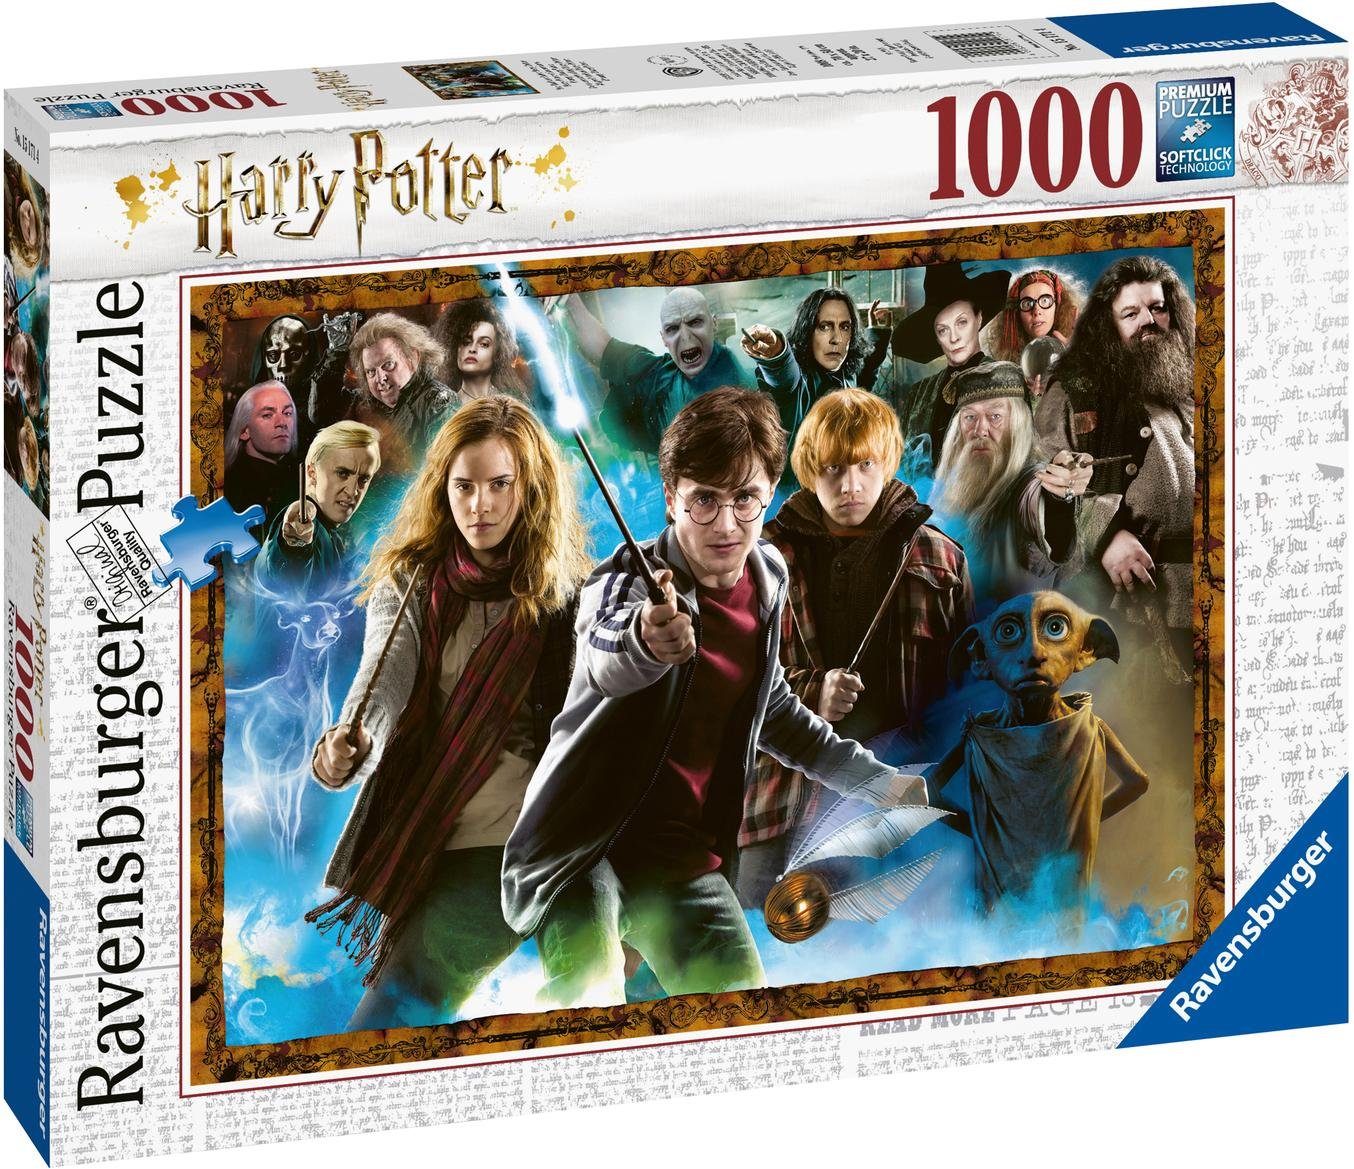 Puzzle Zauberschüler Made - Ravensburger weltweit in Der Puzzleteile, FSC® 1000 Germany, Harry Potter, Wald - schützt